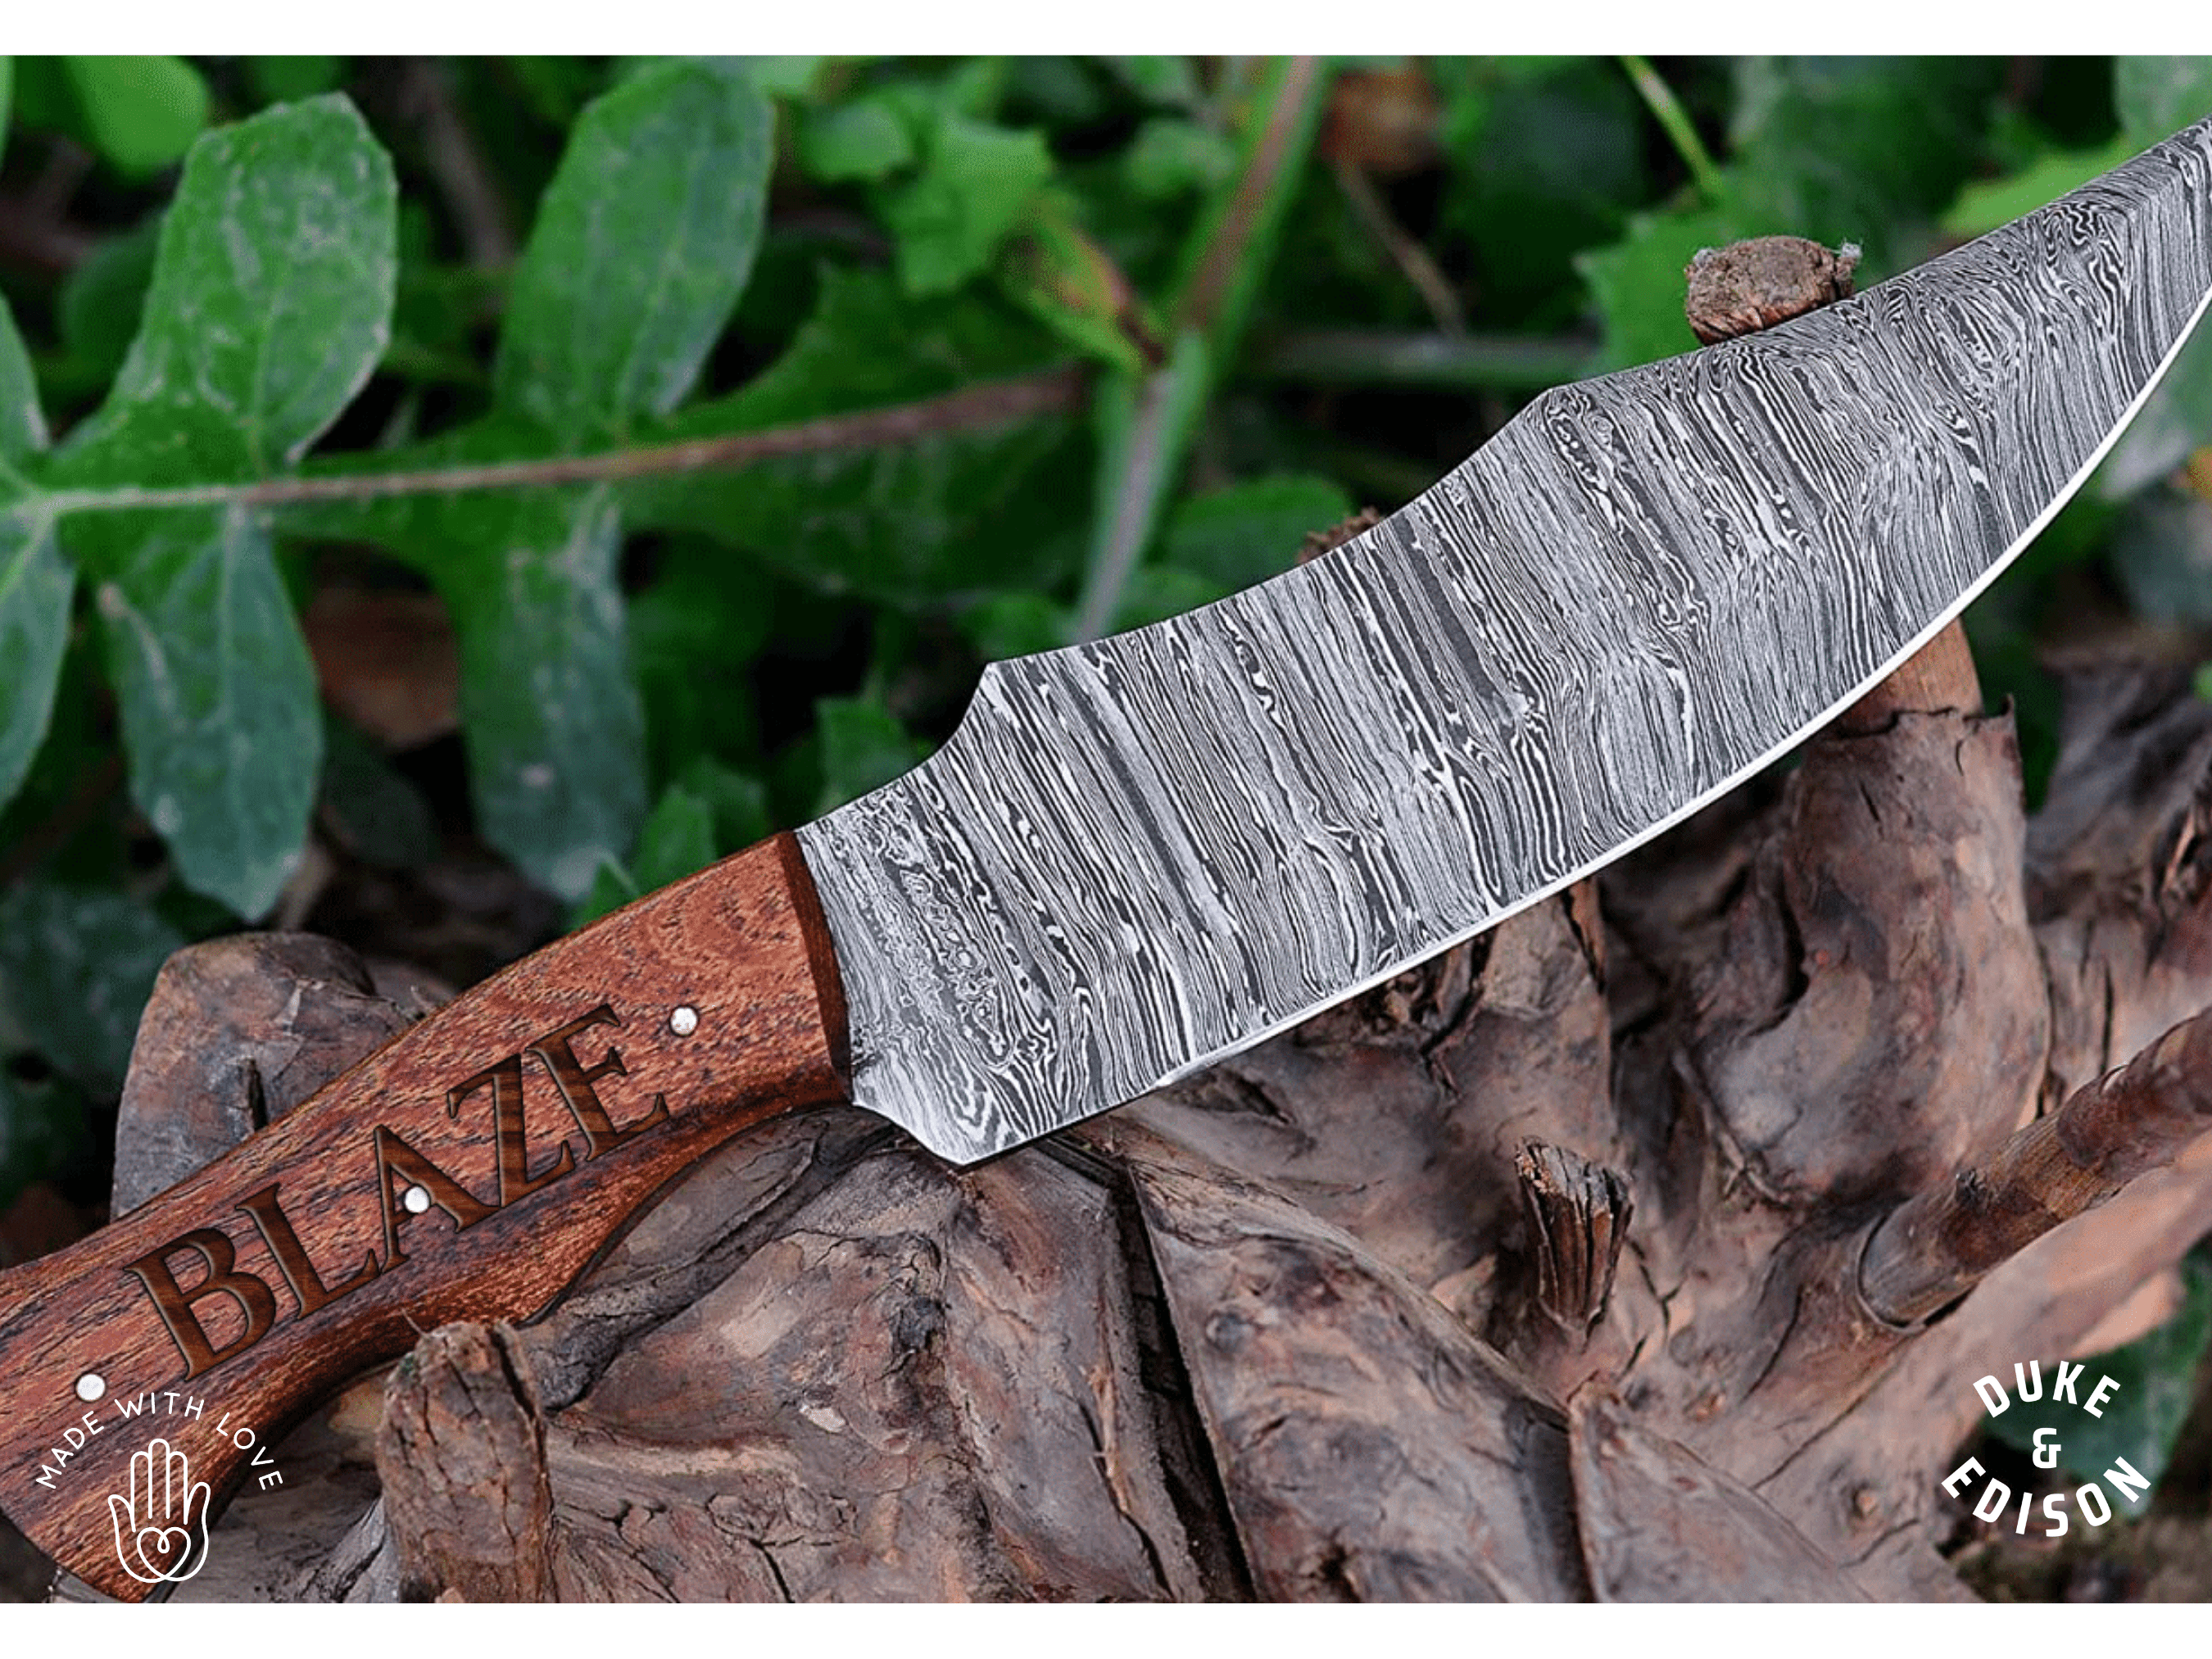 Duke & Edison groomsmen Custom Engraved Damascus Hunting Knife